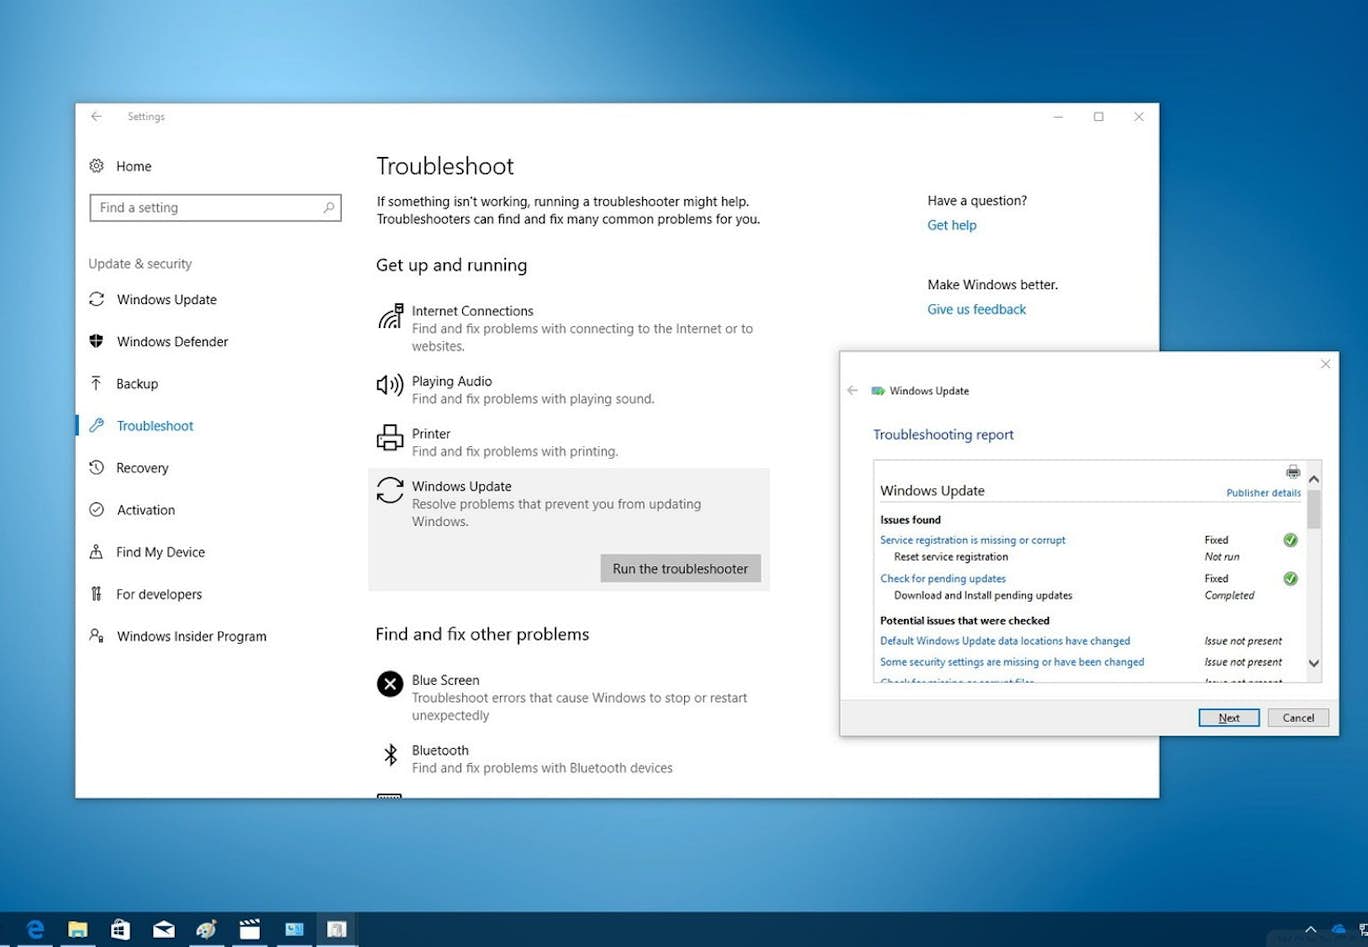 Windows 10 Fejl Ved Opdatering لم يسبق له مثيل الصور Tier3 Xyz